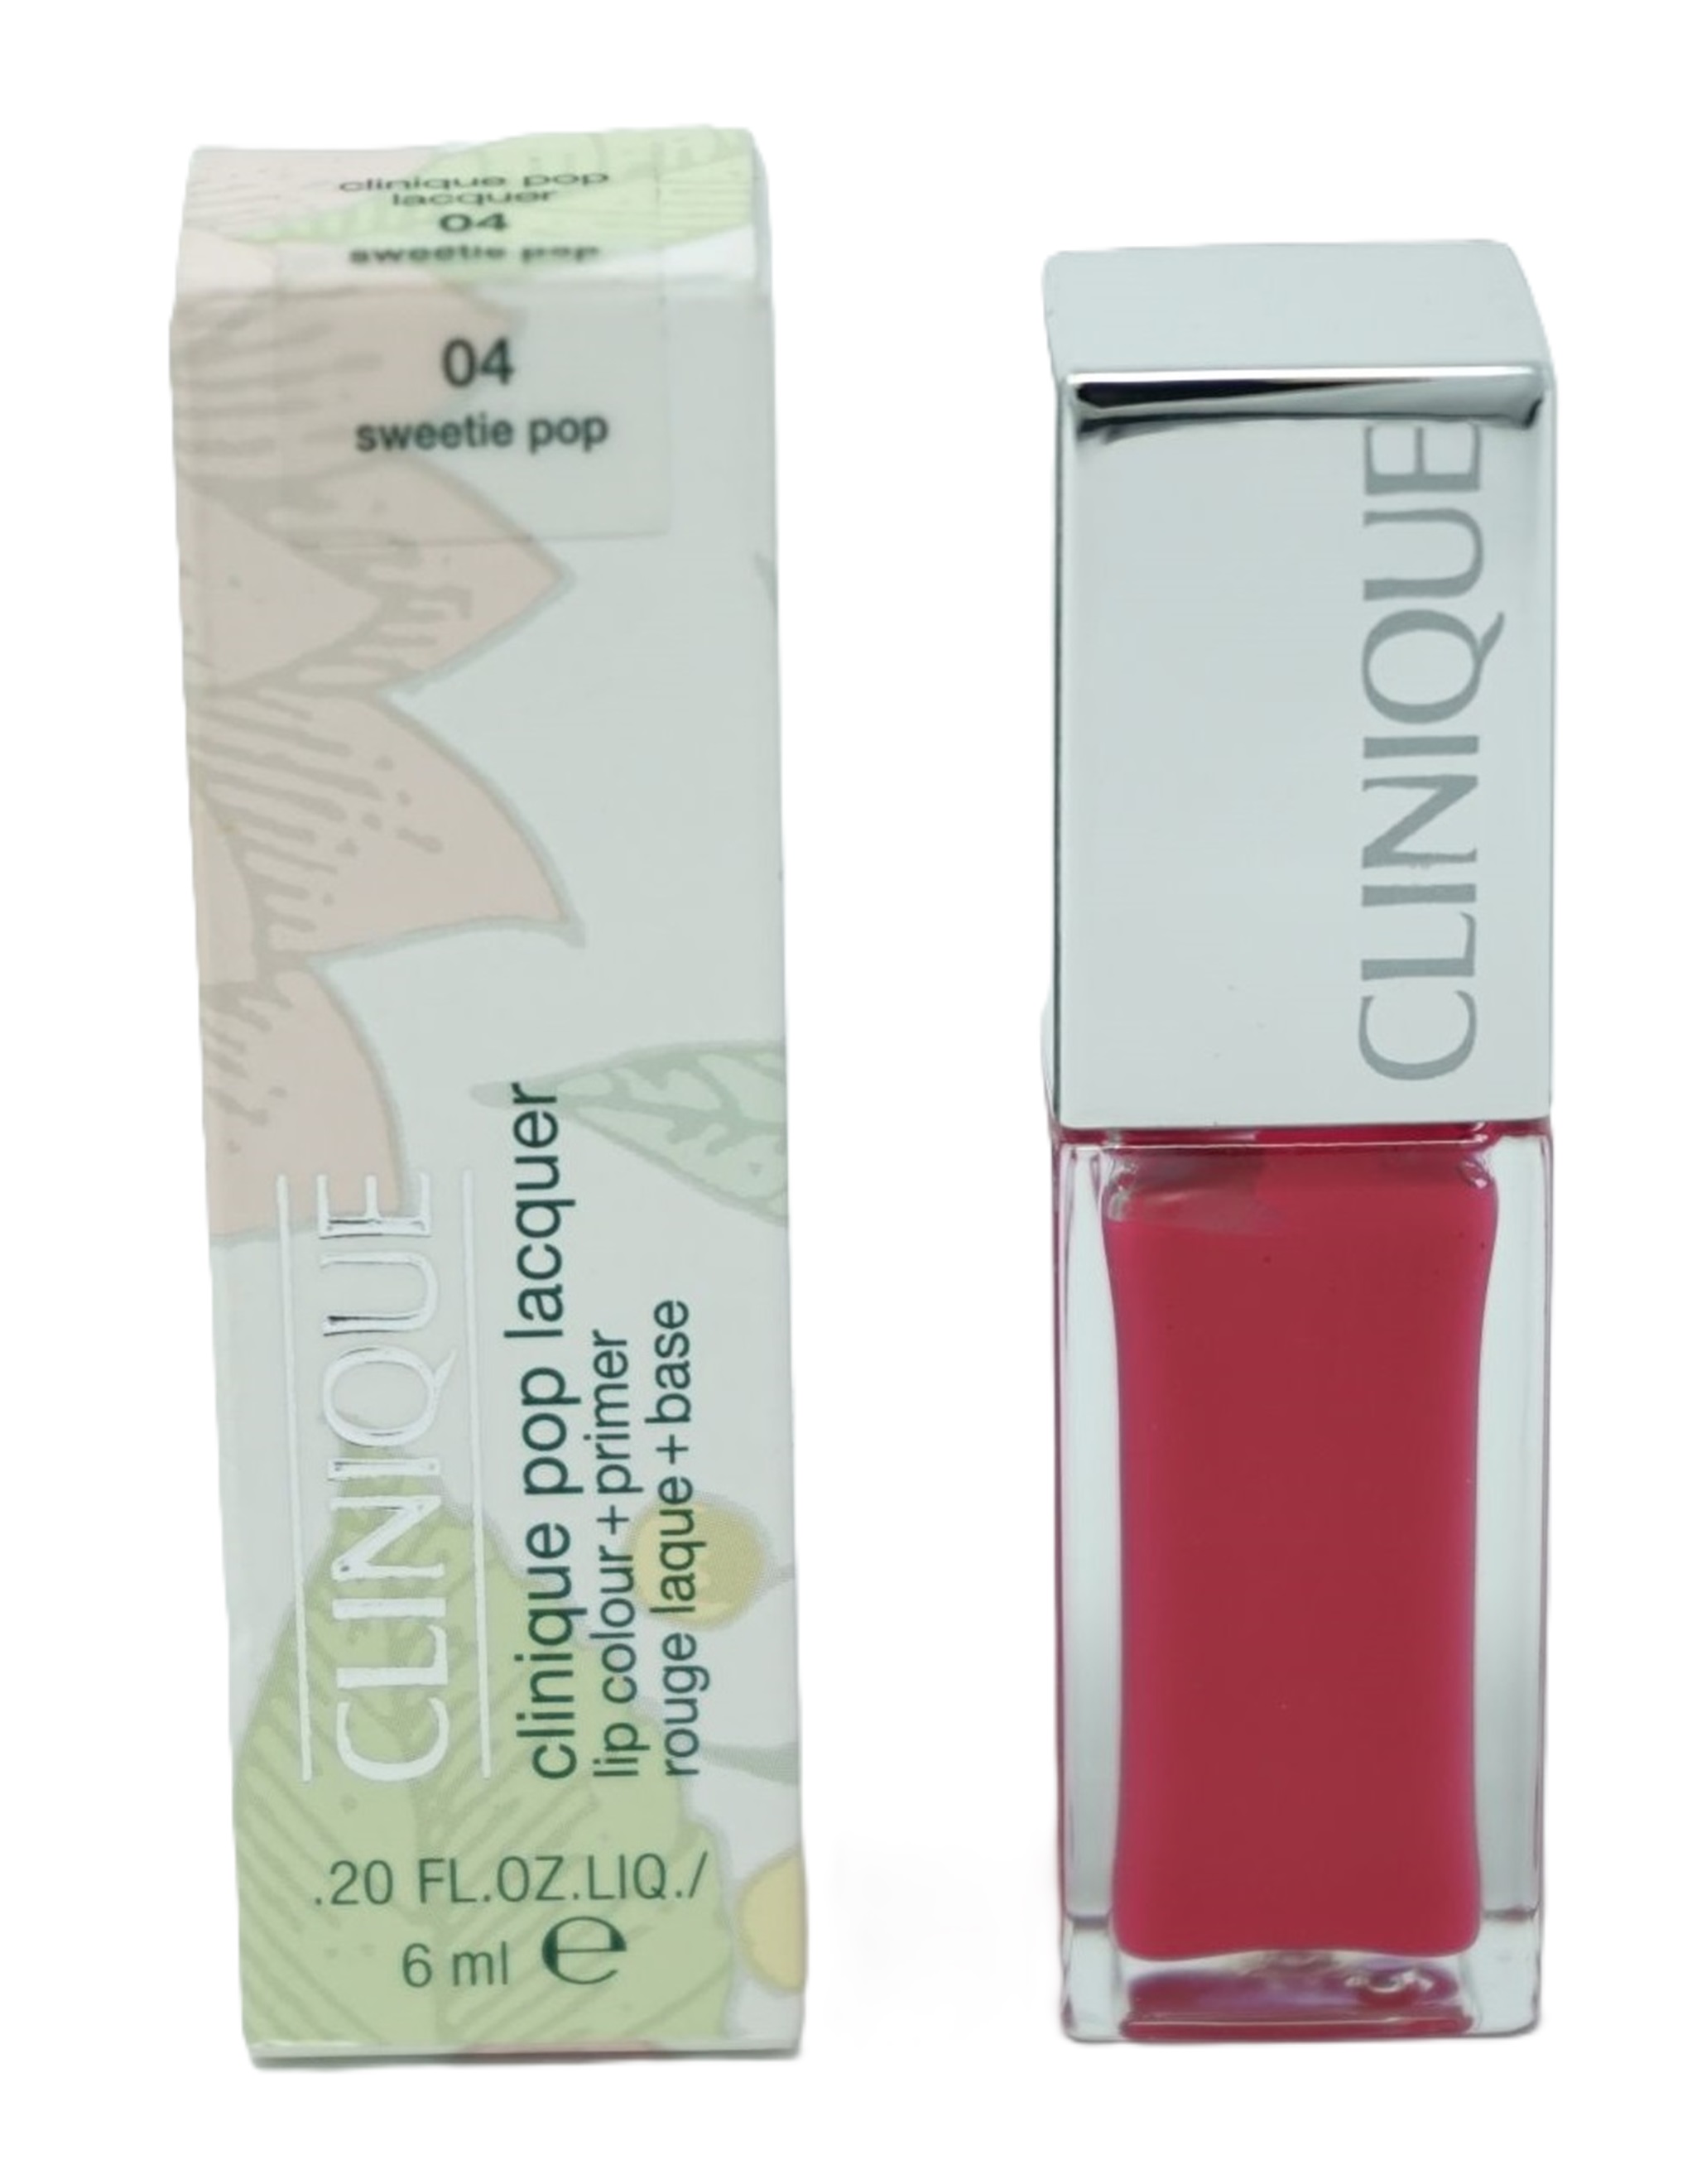 Clinique Pop Lacquer lip colour + primer rouge Lippenstift  6ml /04 Sweetie pop